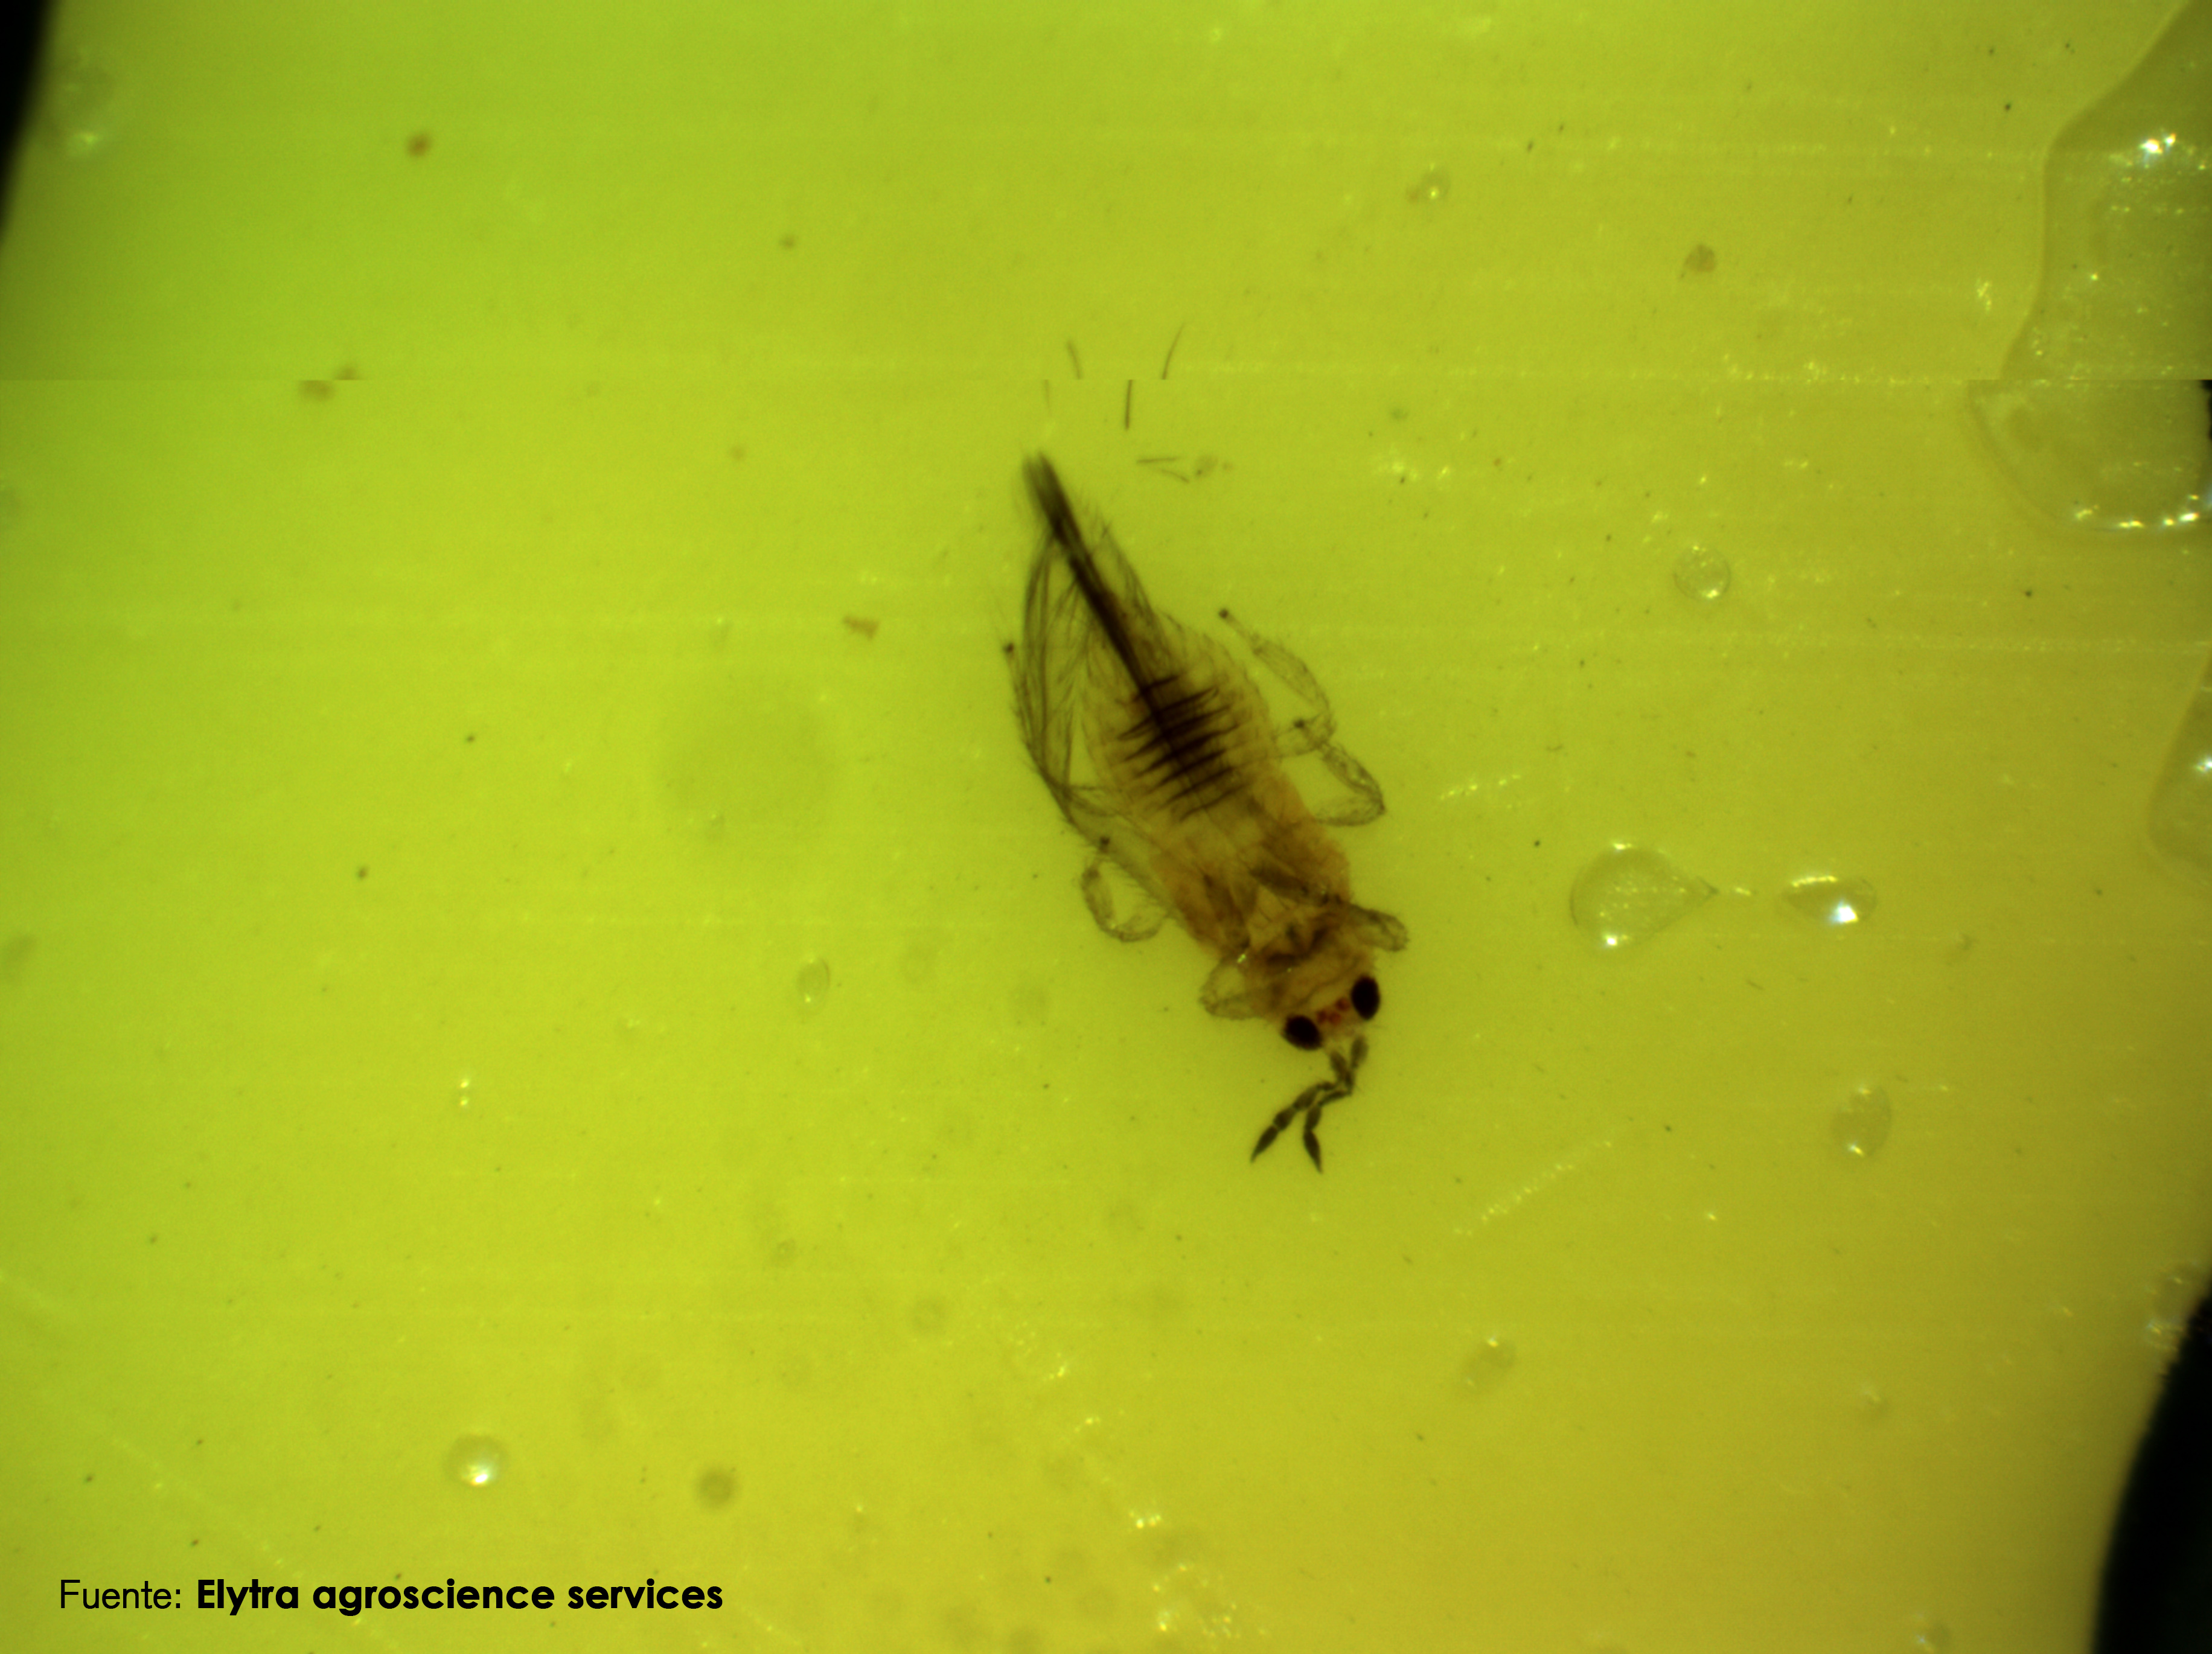 Un estudio de biodiversidad ayuda a detectar una nueva plaga de trips